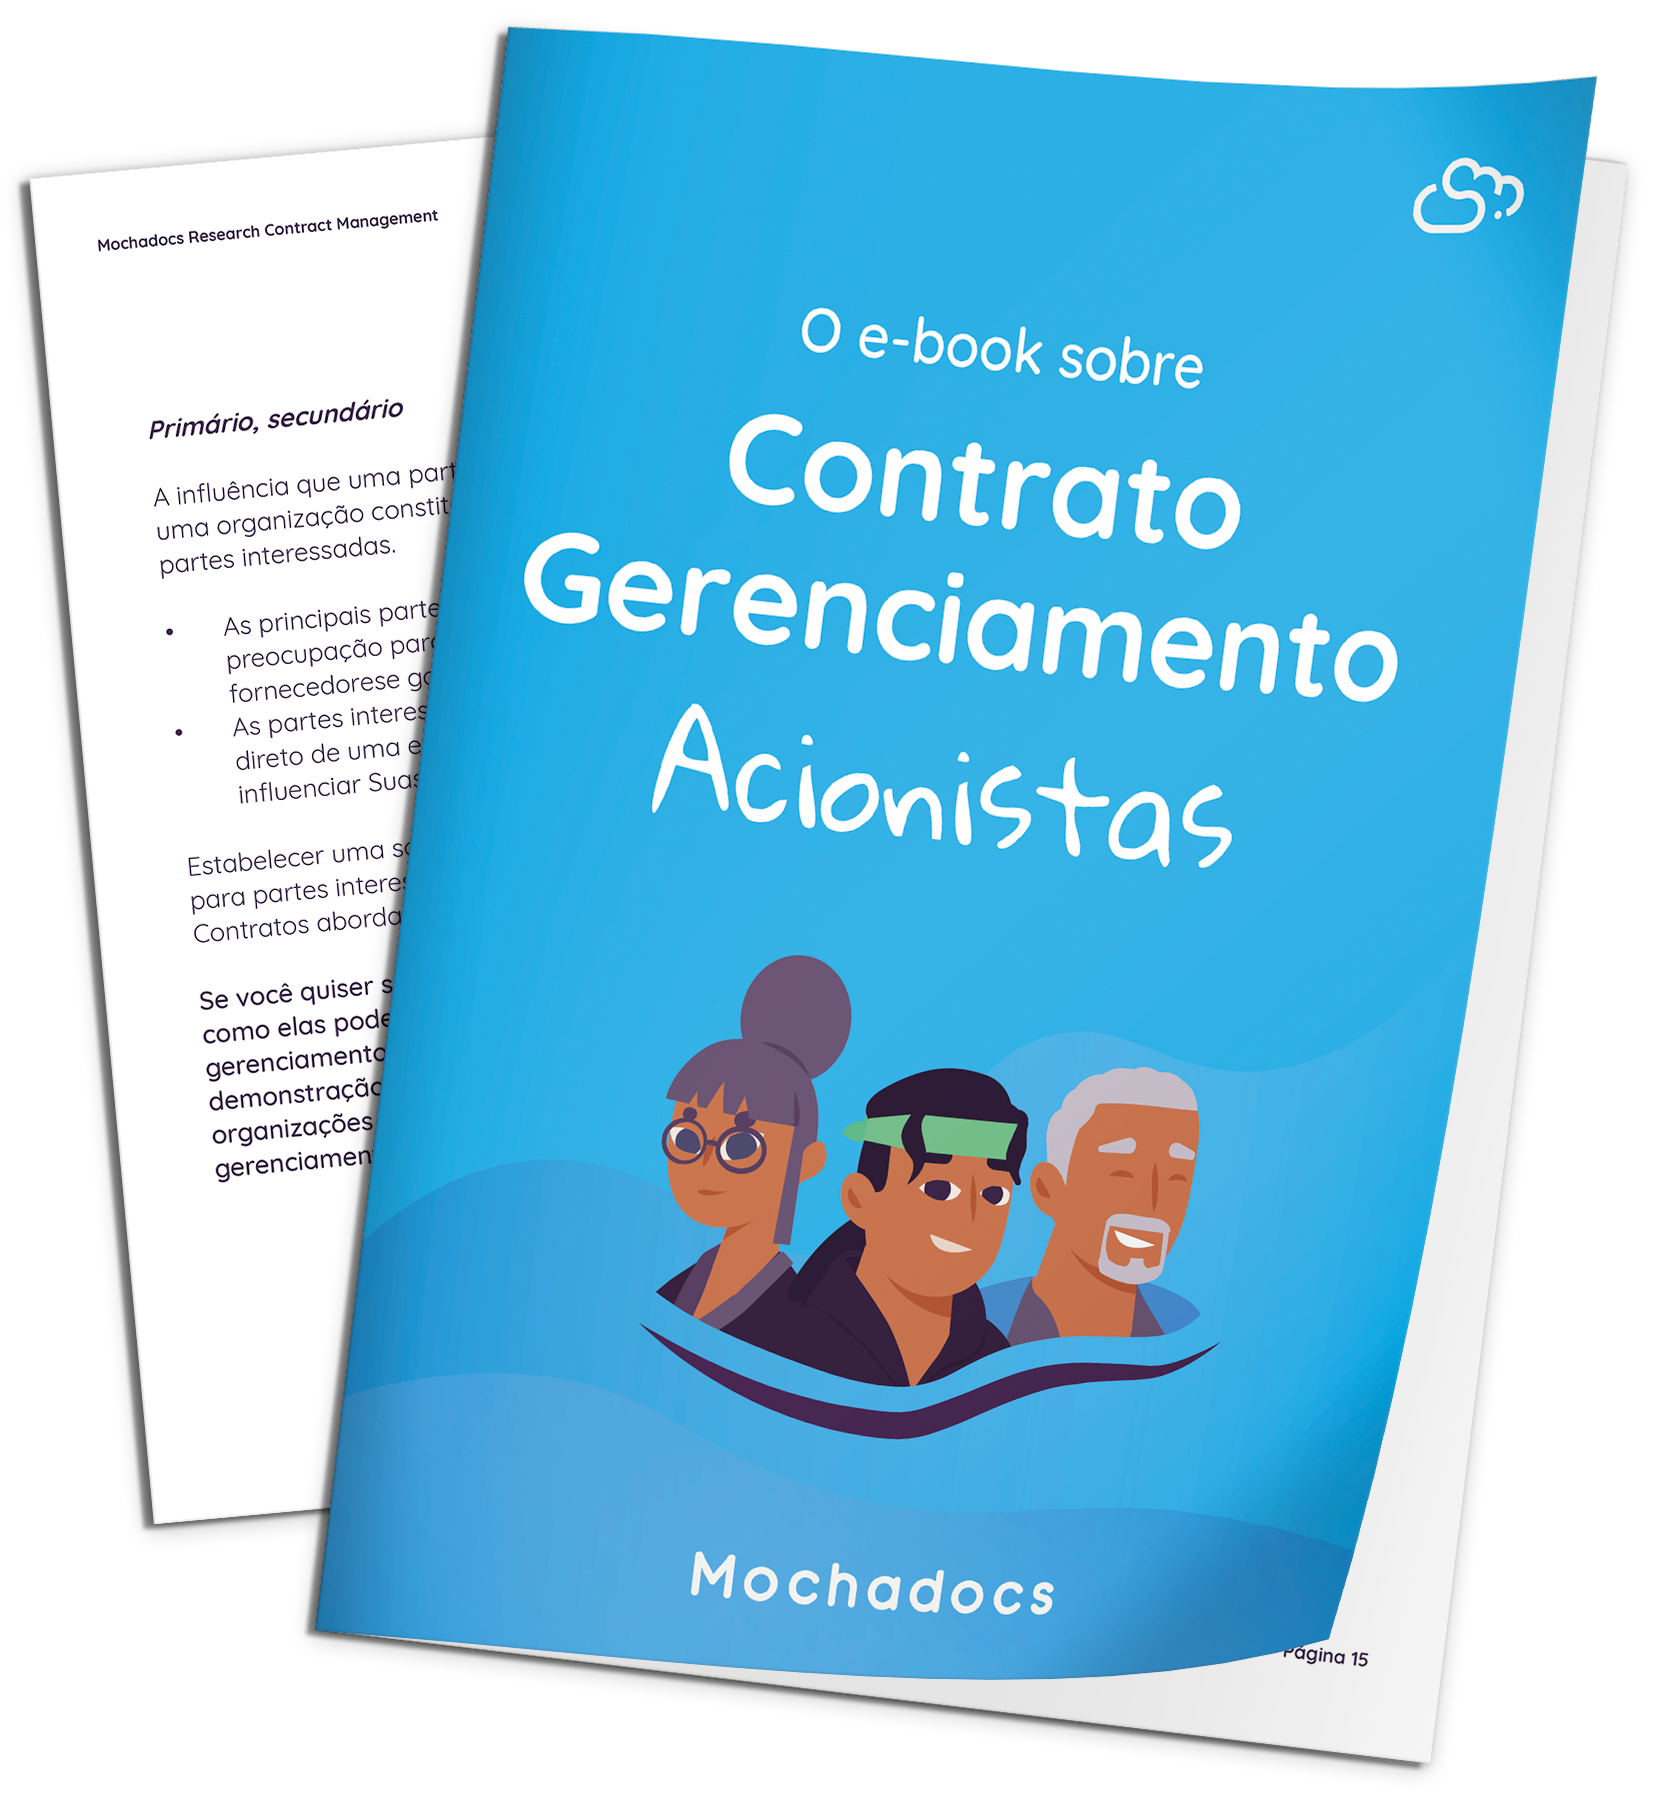 Mochadocs - Gestão de contratos - Contrato Gerenciamento Acionistas